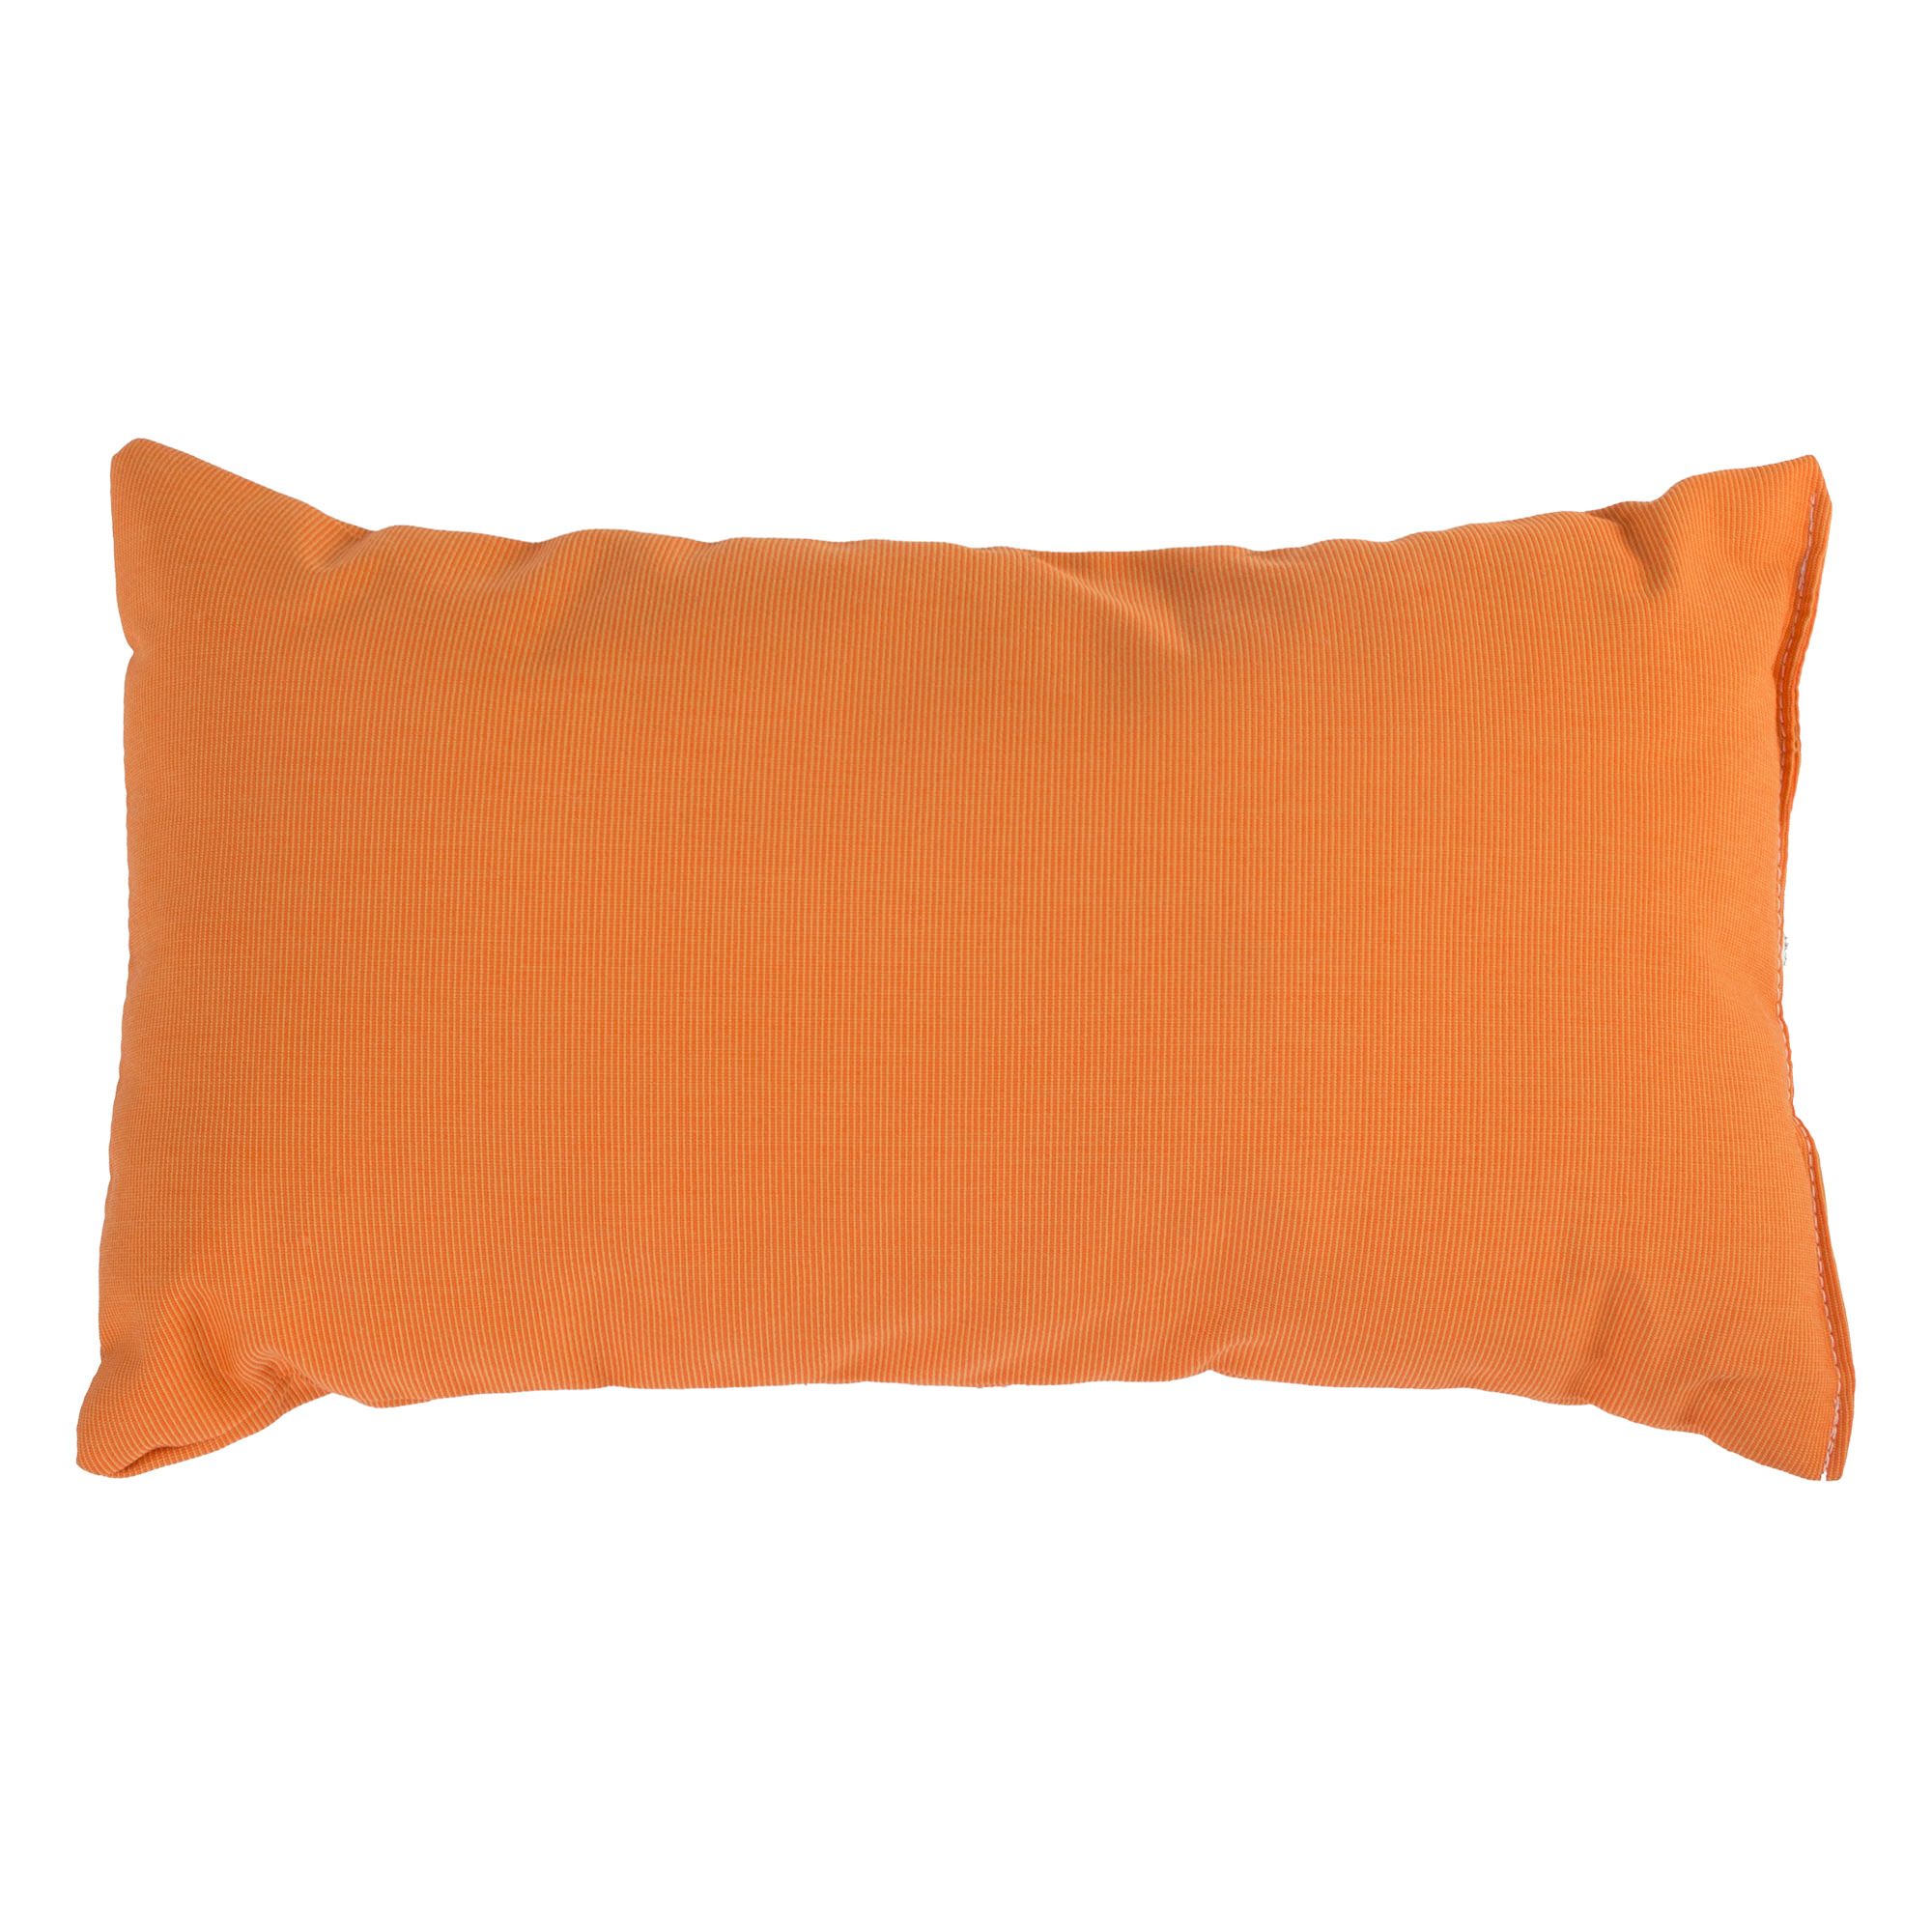 Купить подушку прямоугольную. Оранжевая подушка. Подушка оранжевая декоративная. Оранжевая бархатная подушка. Желто-оранжевая подушка.